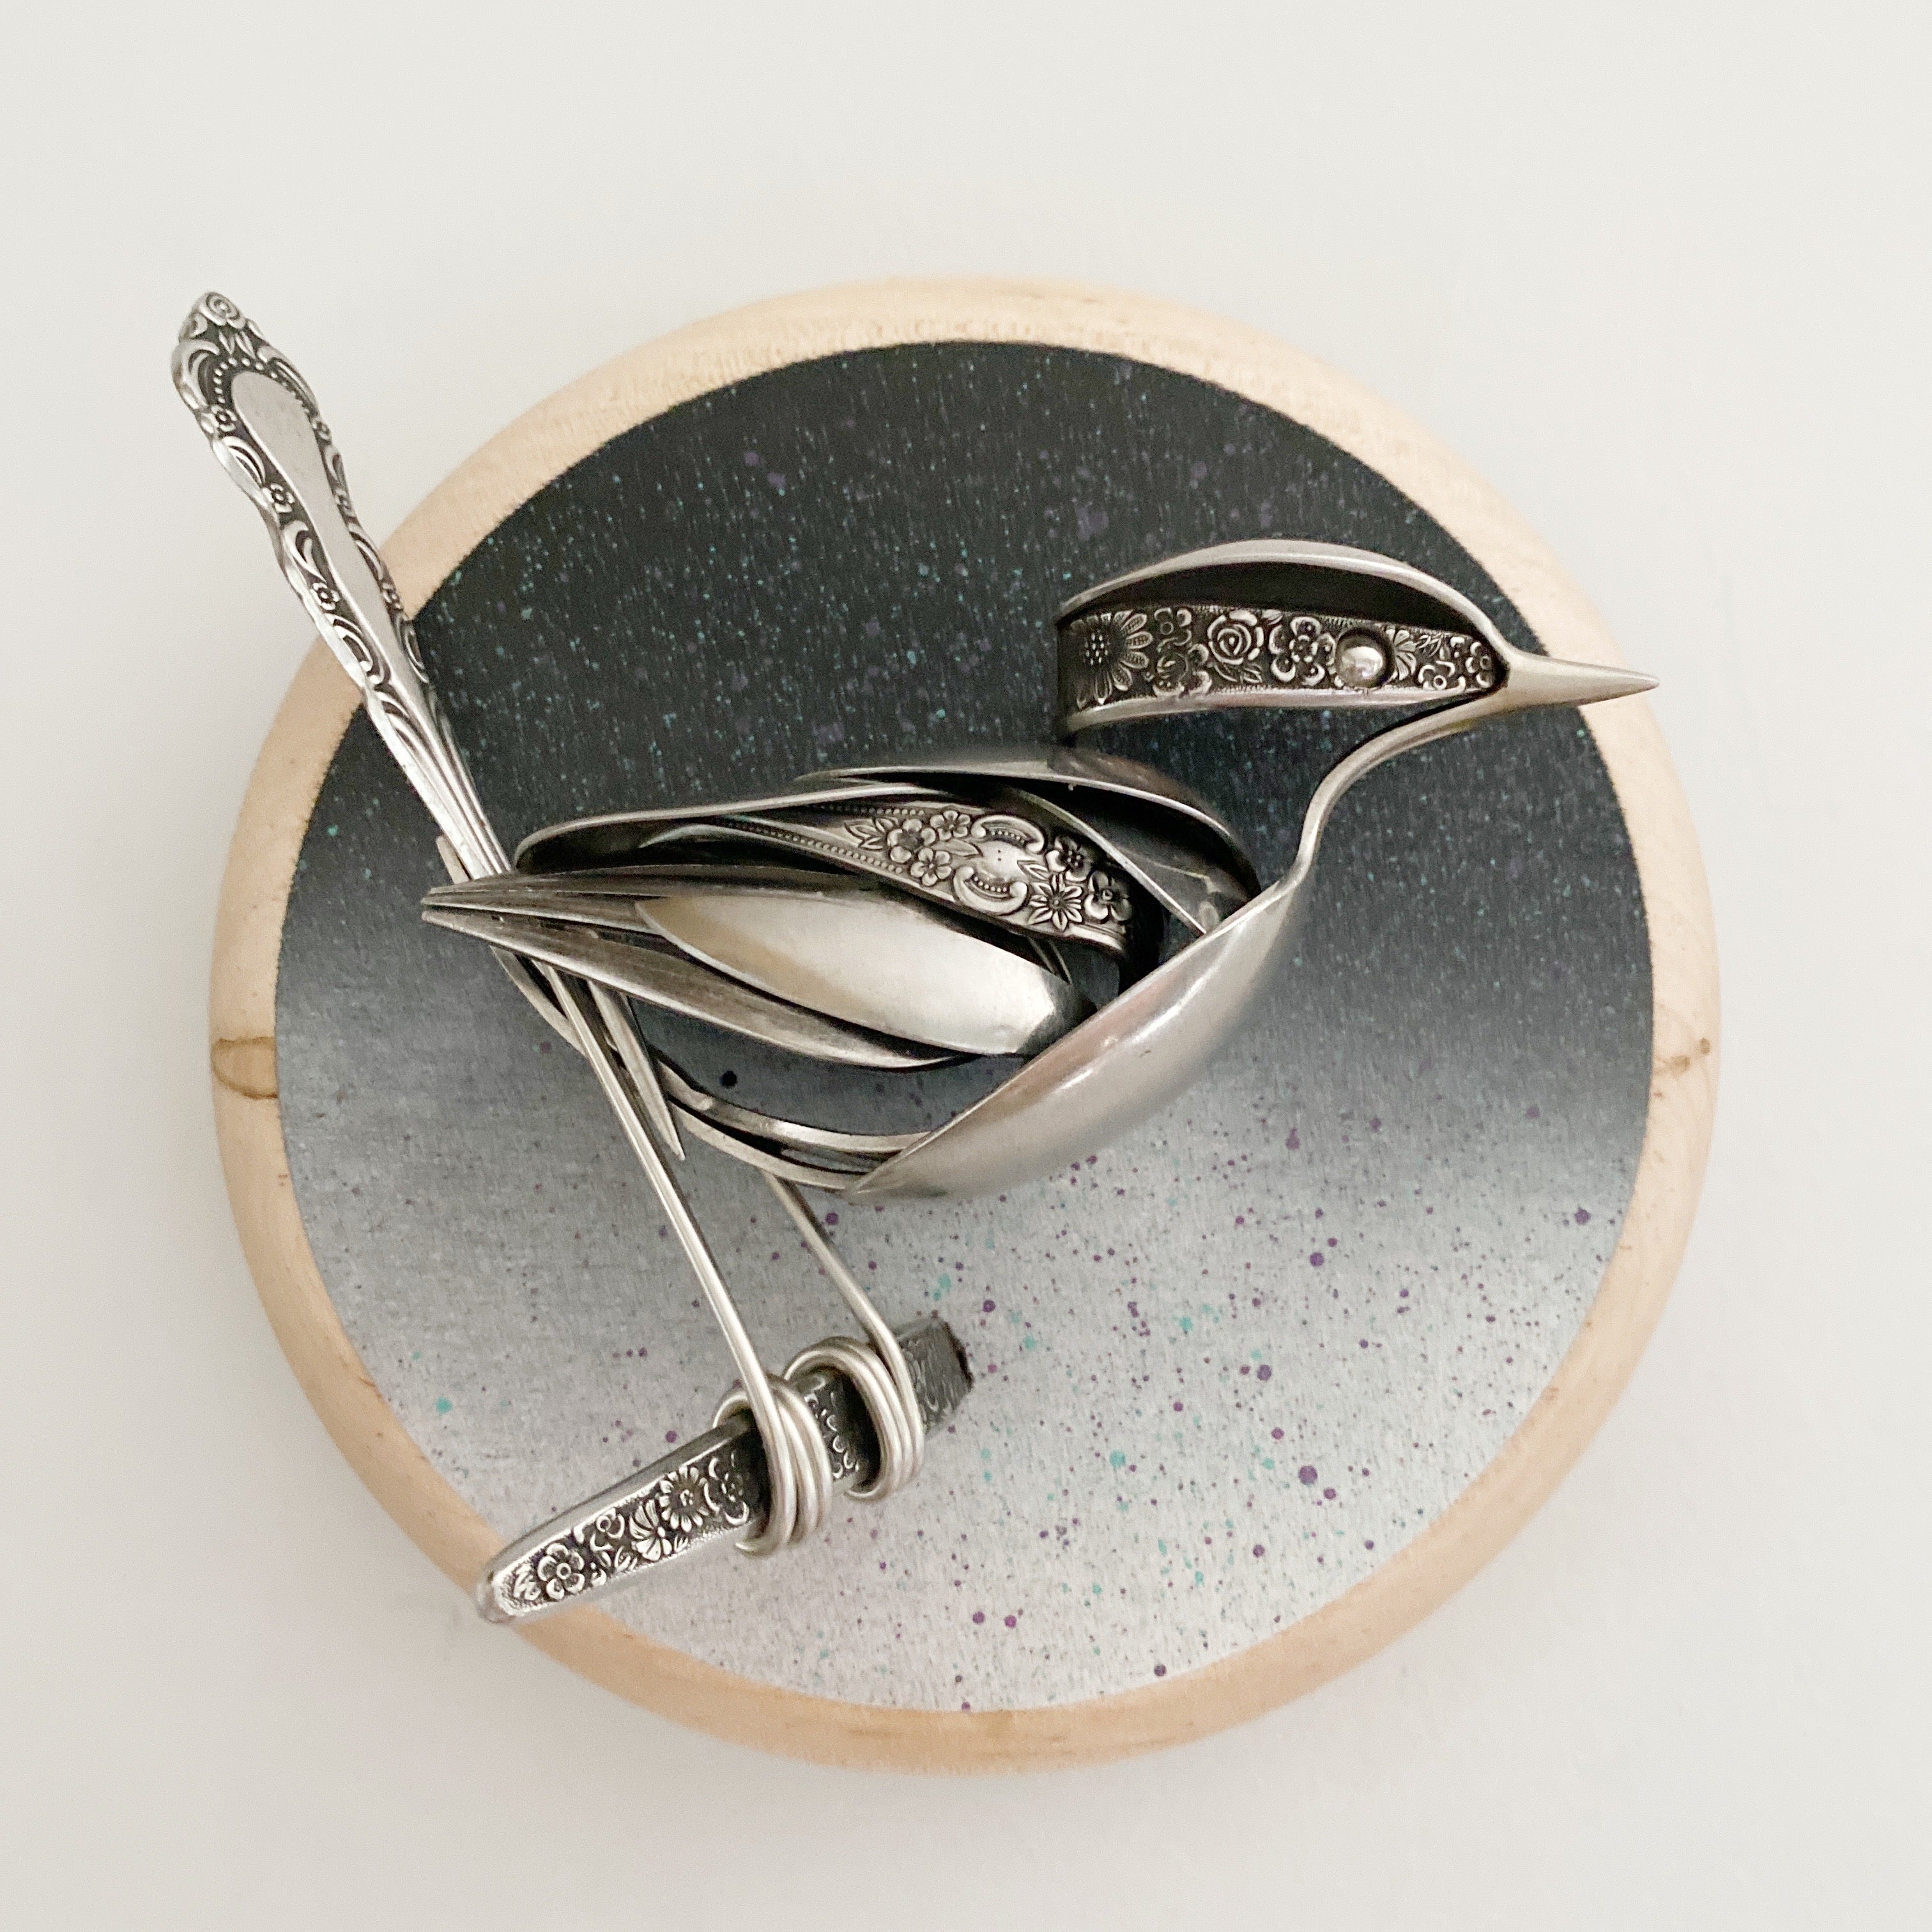 "Vesper" - Upcycled Metal Bird Sculpture